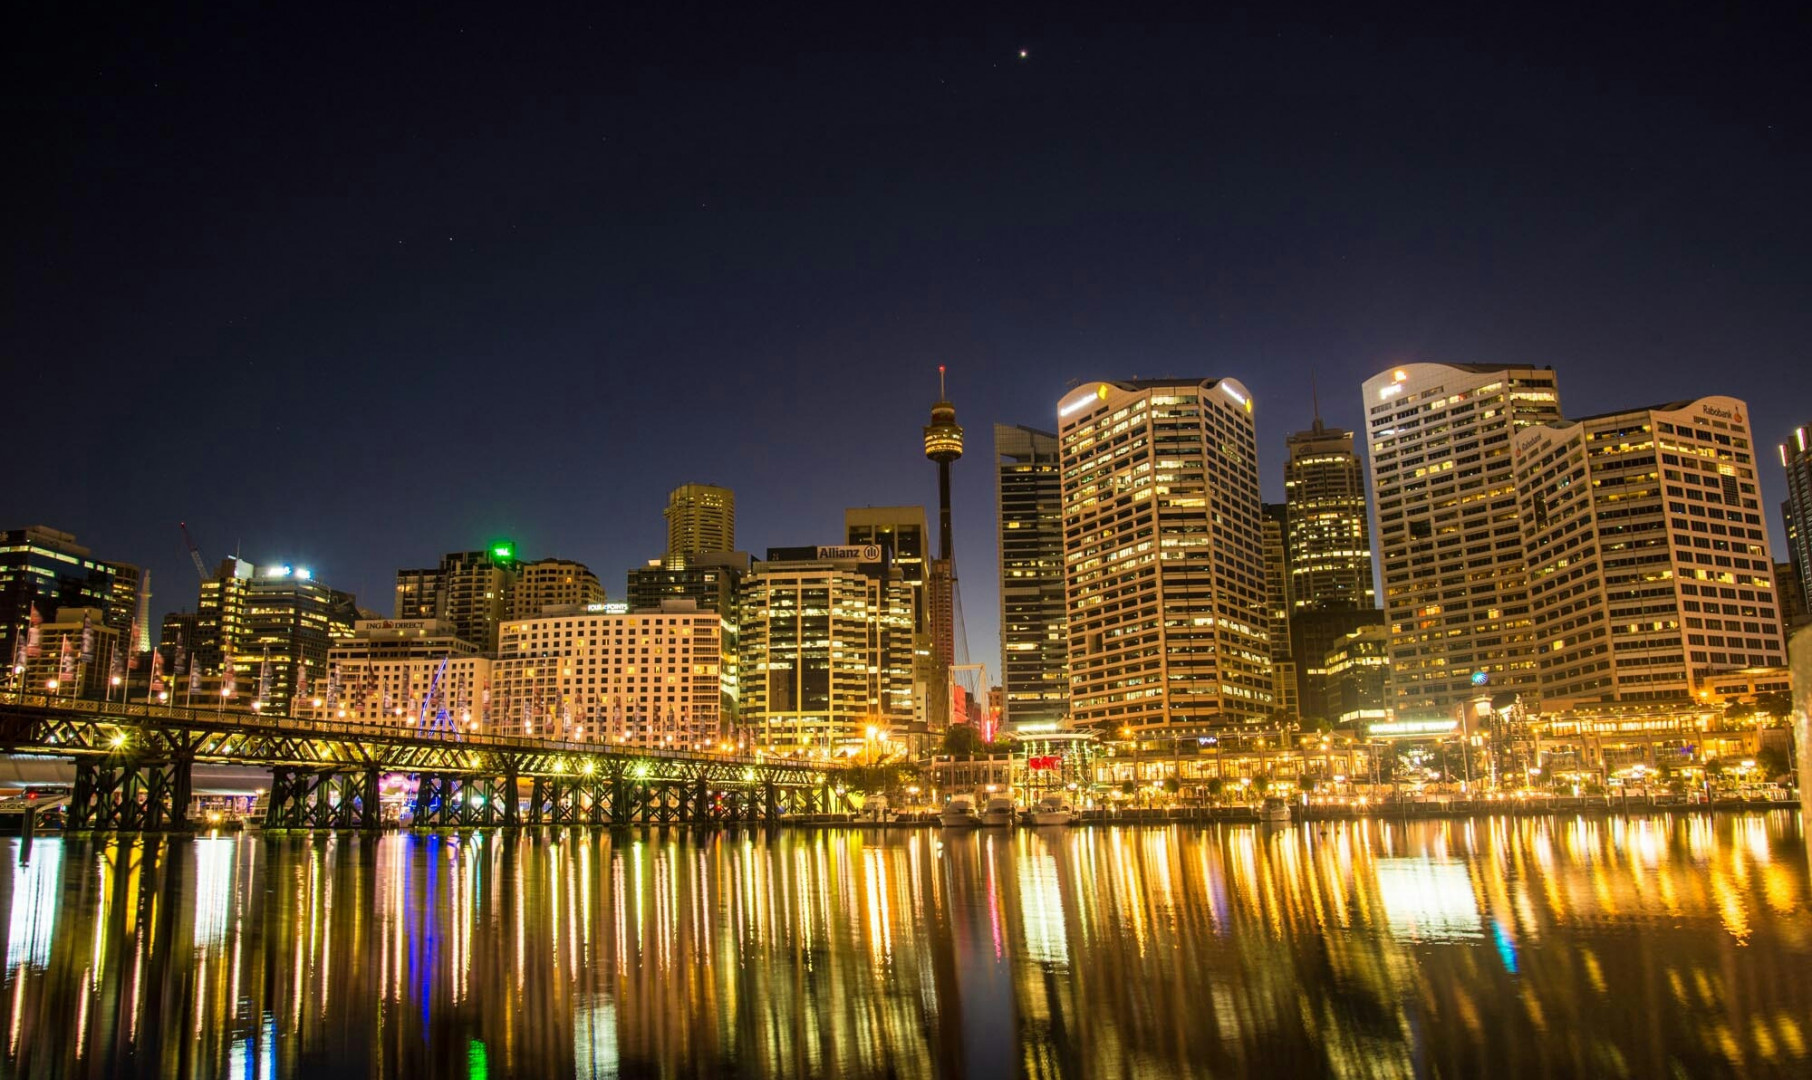 Darling Harbour, Sydney